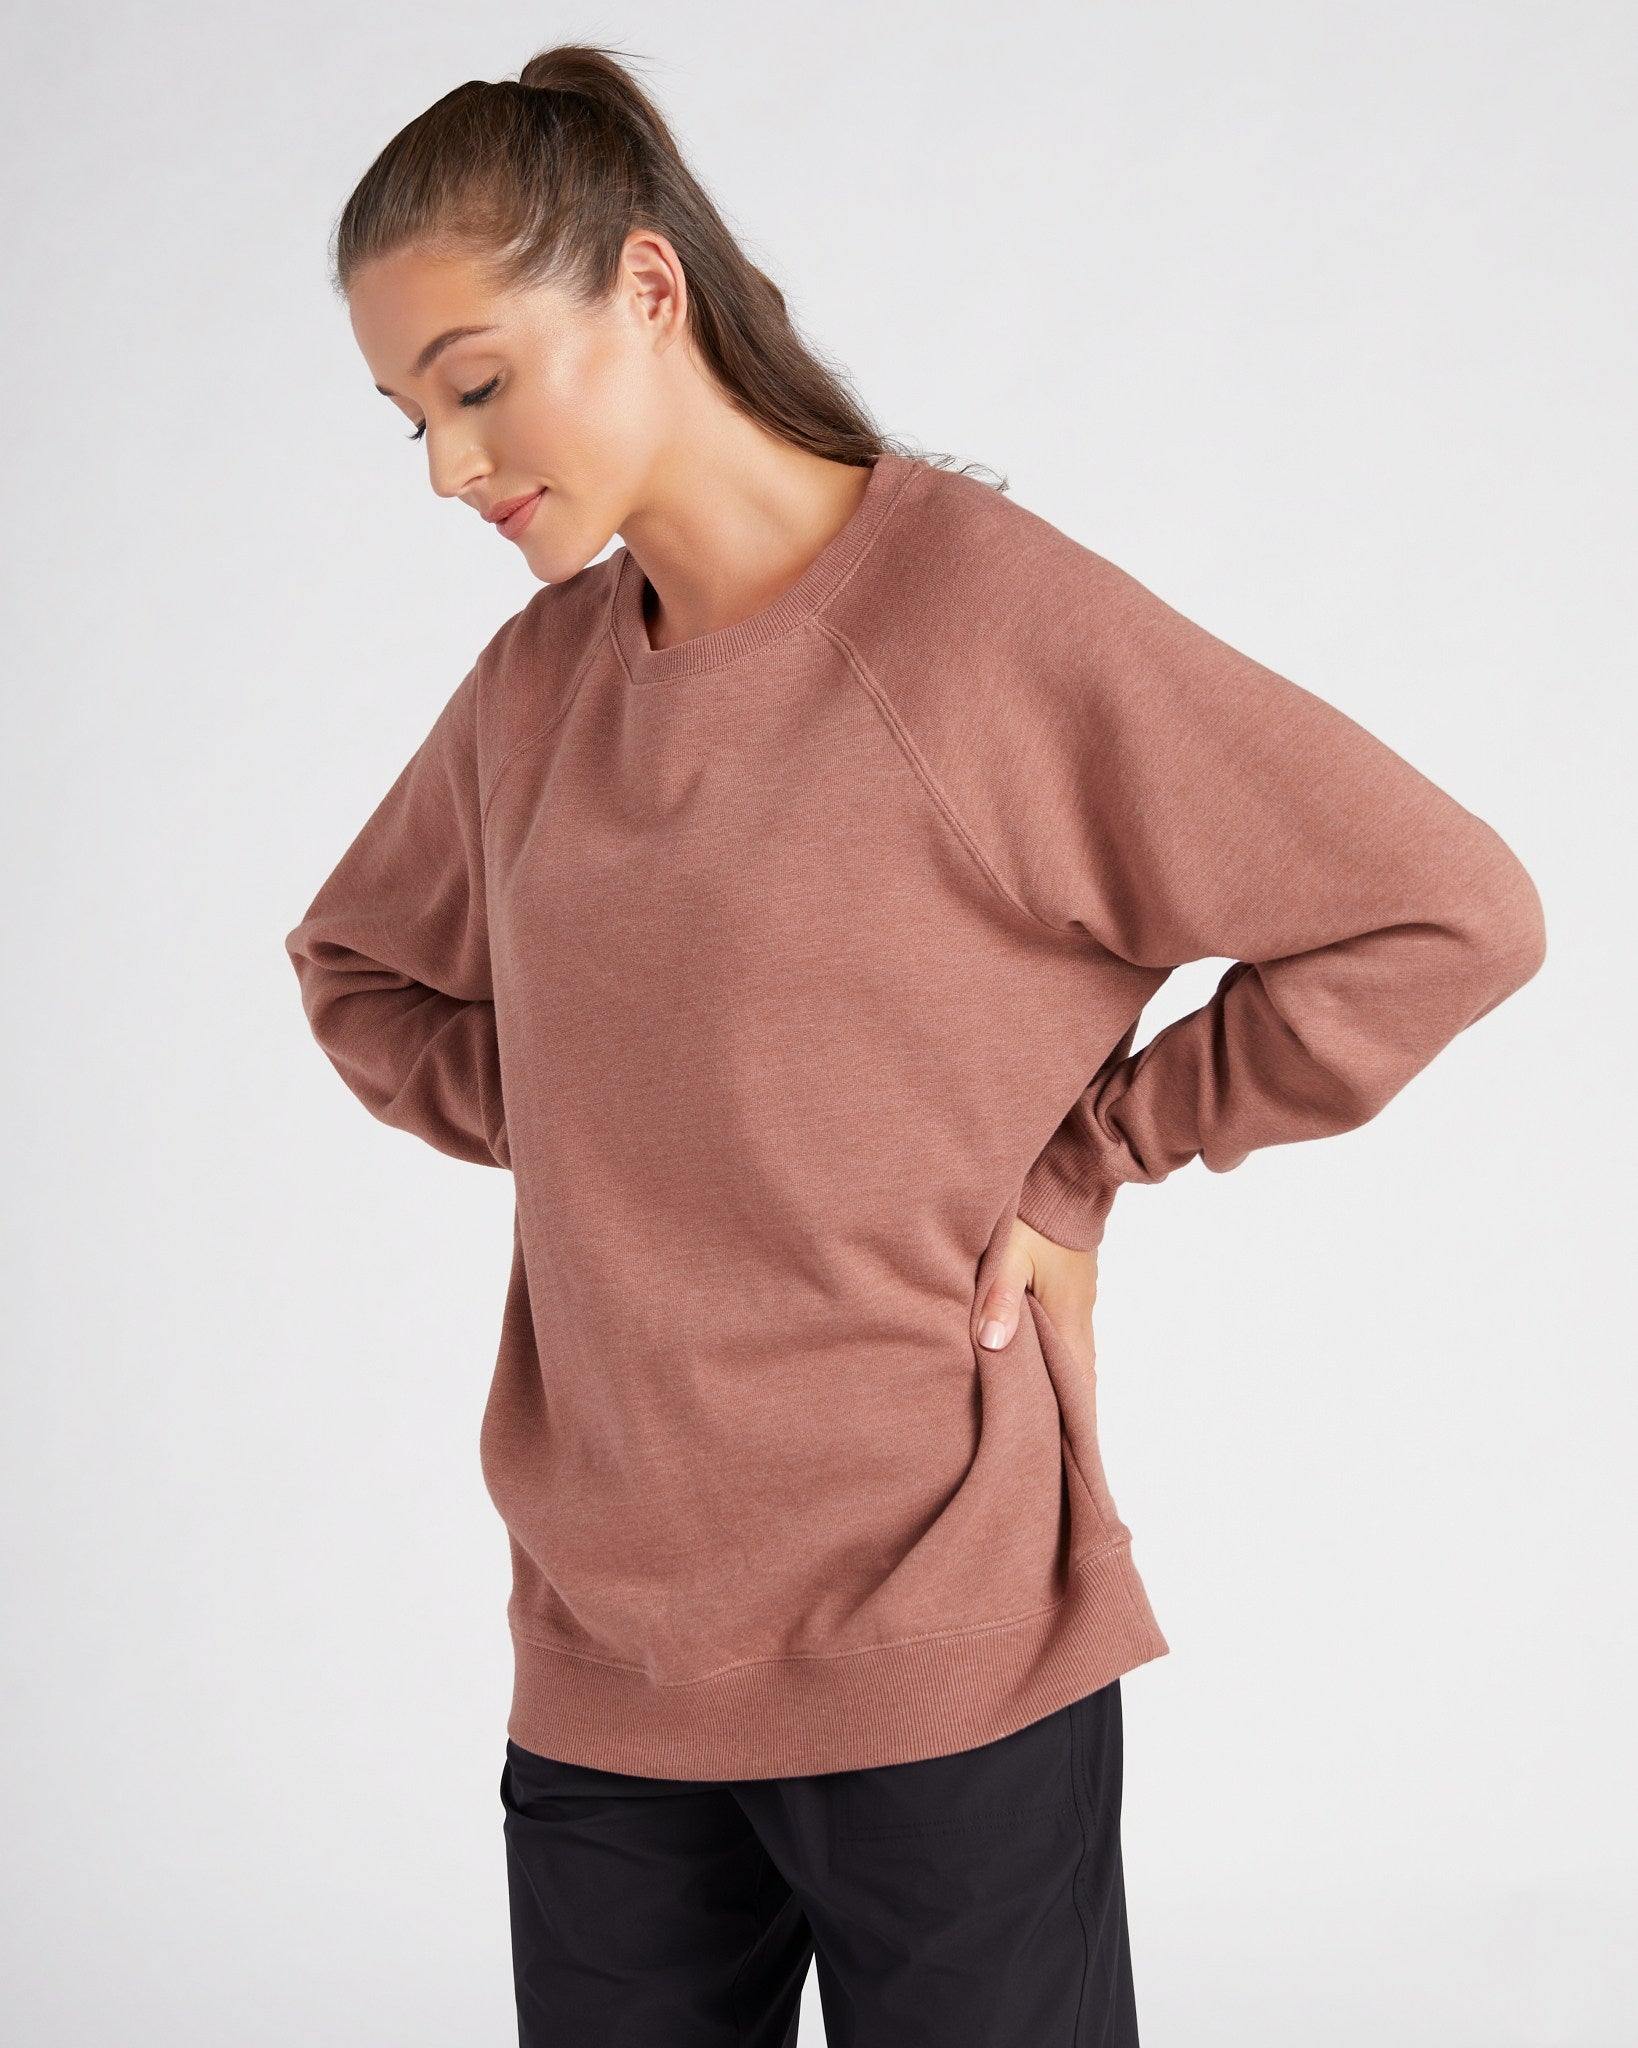 Glyder - Women's Vintage Oversized Crewneck Sweatshirt